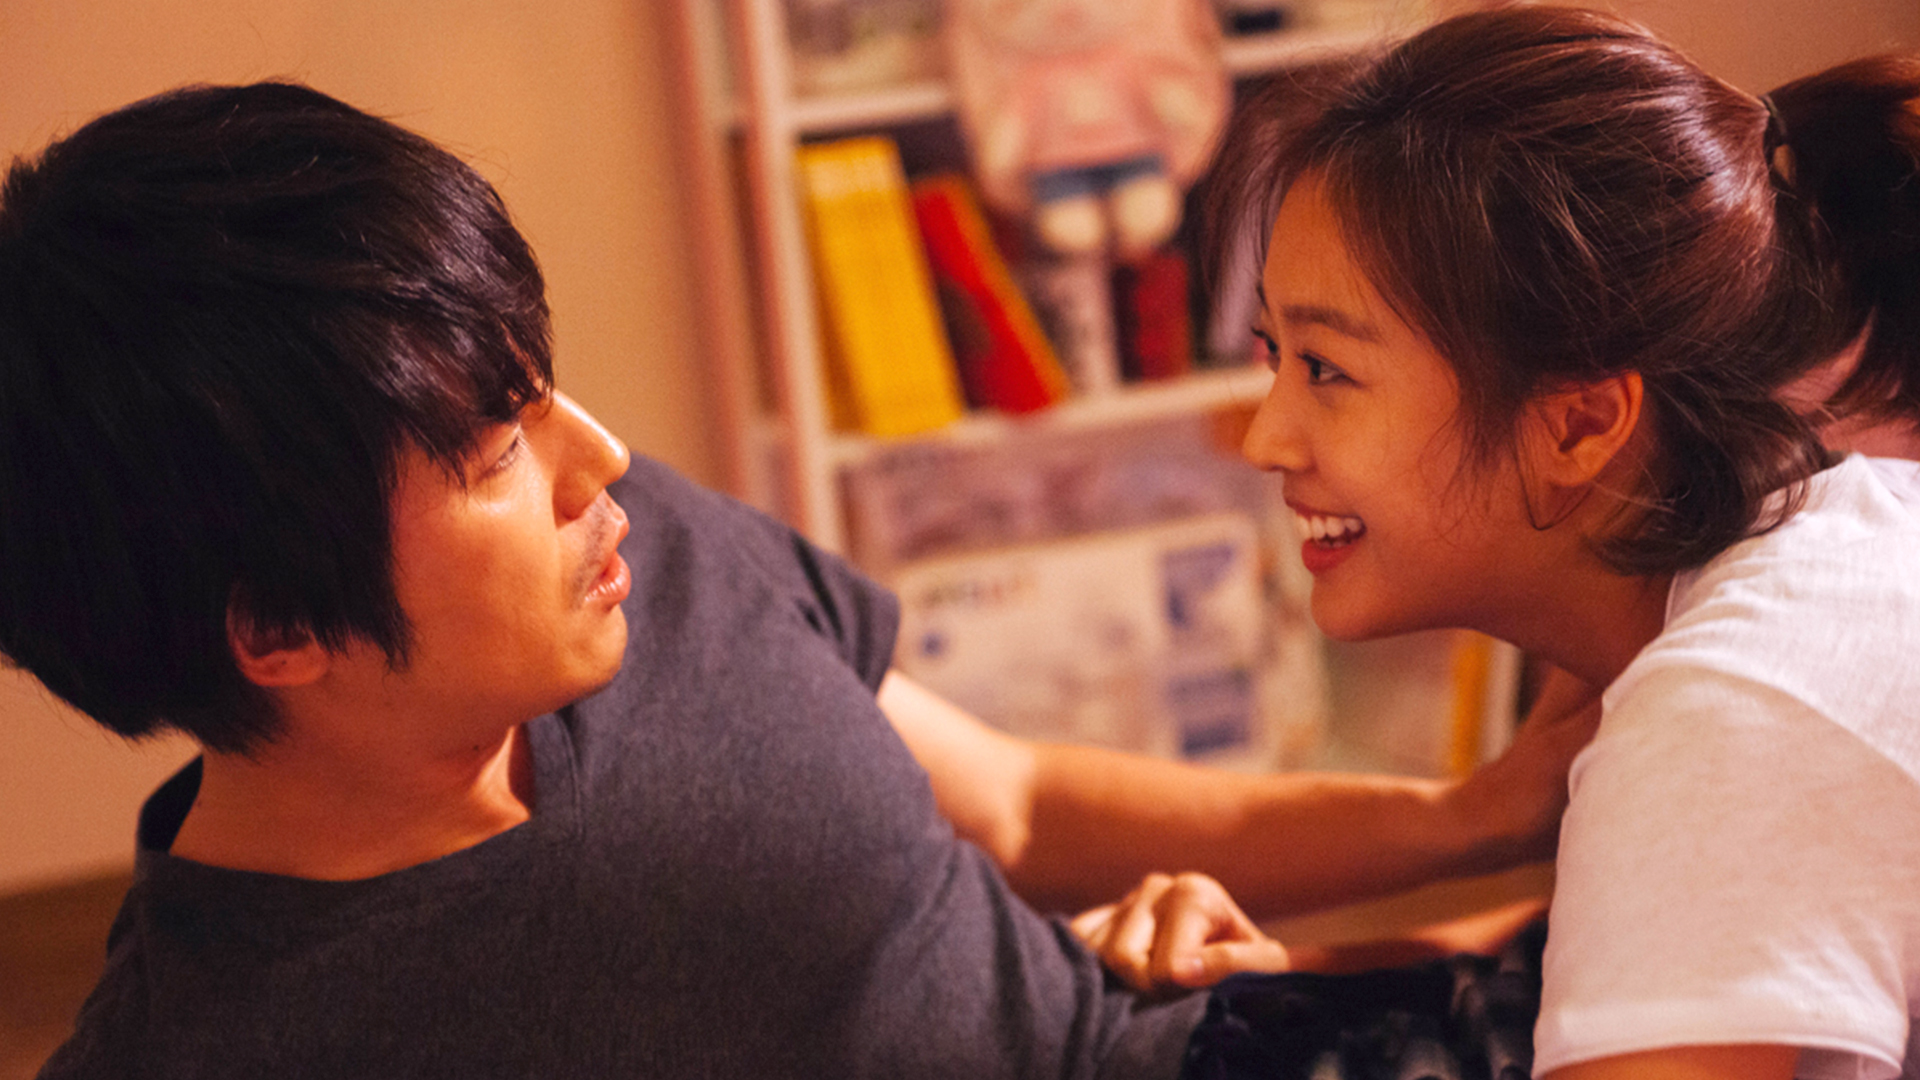 4 nữ sinh gợi cảm nhất phim Hàn: Số 2 cảnh nóng triền miên, sốc nhất là số 3 gạ cả thầy giáo lăn giường - Ảnh 7.